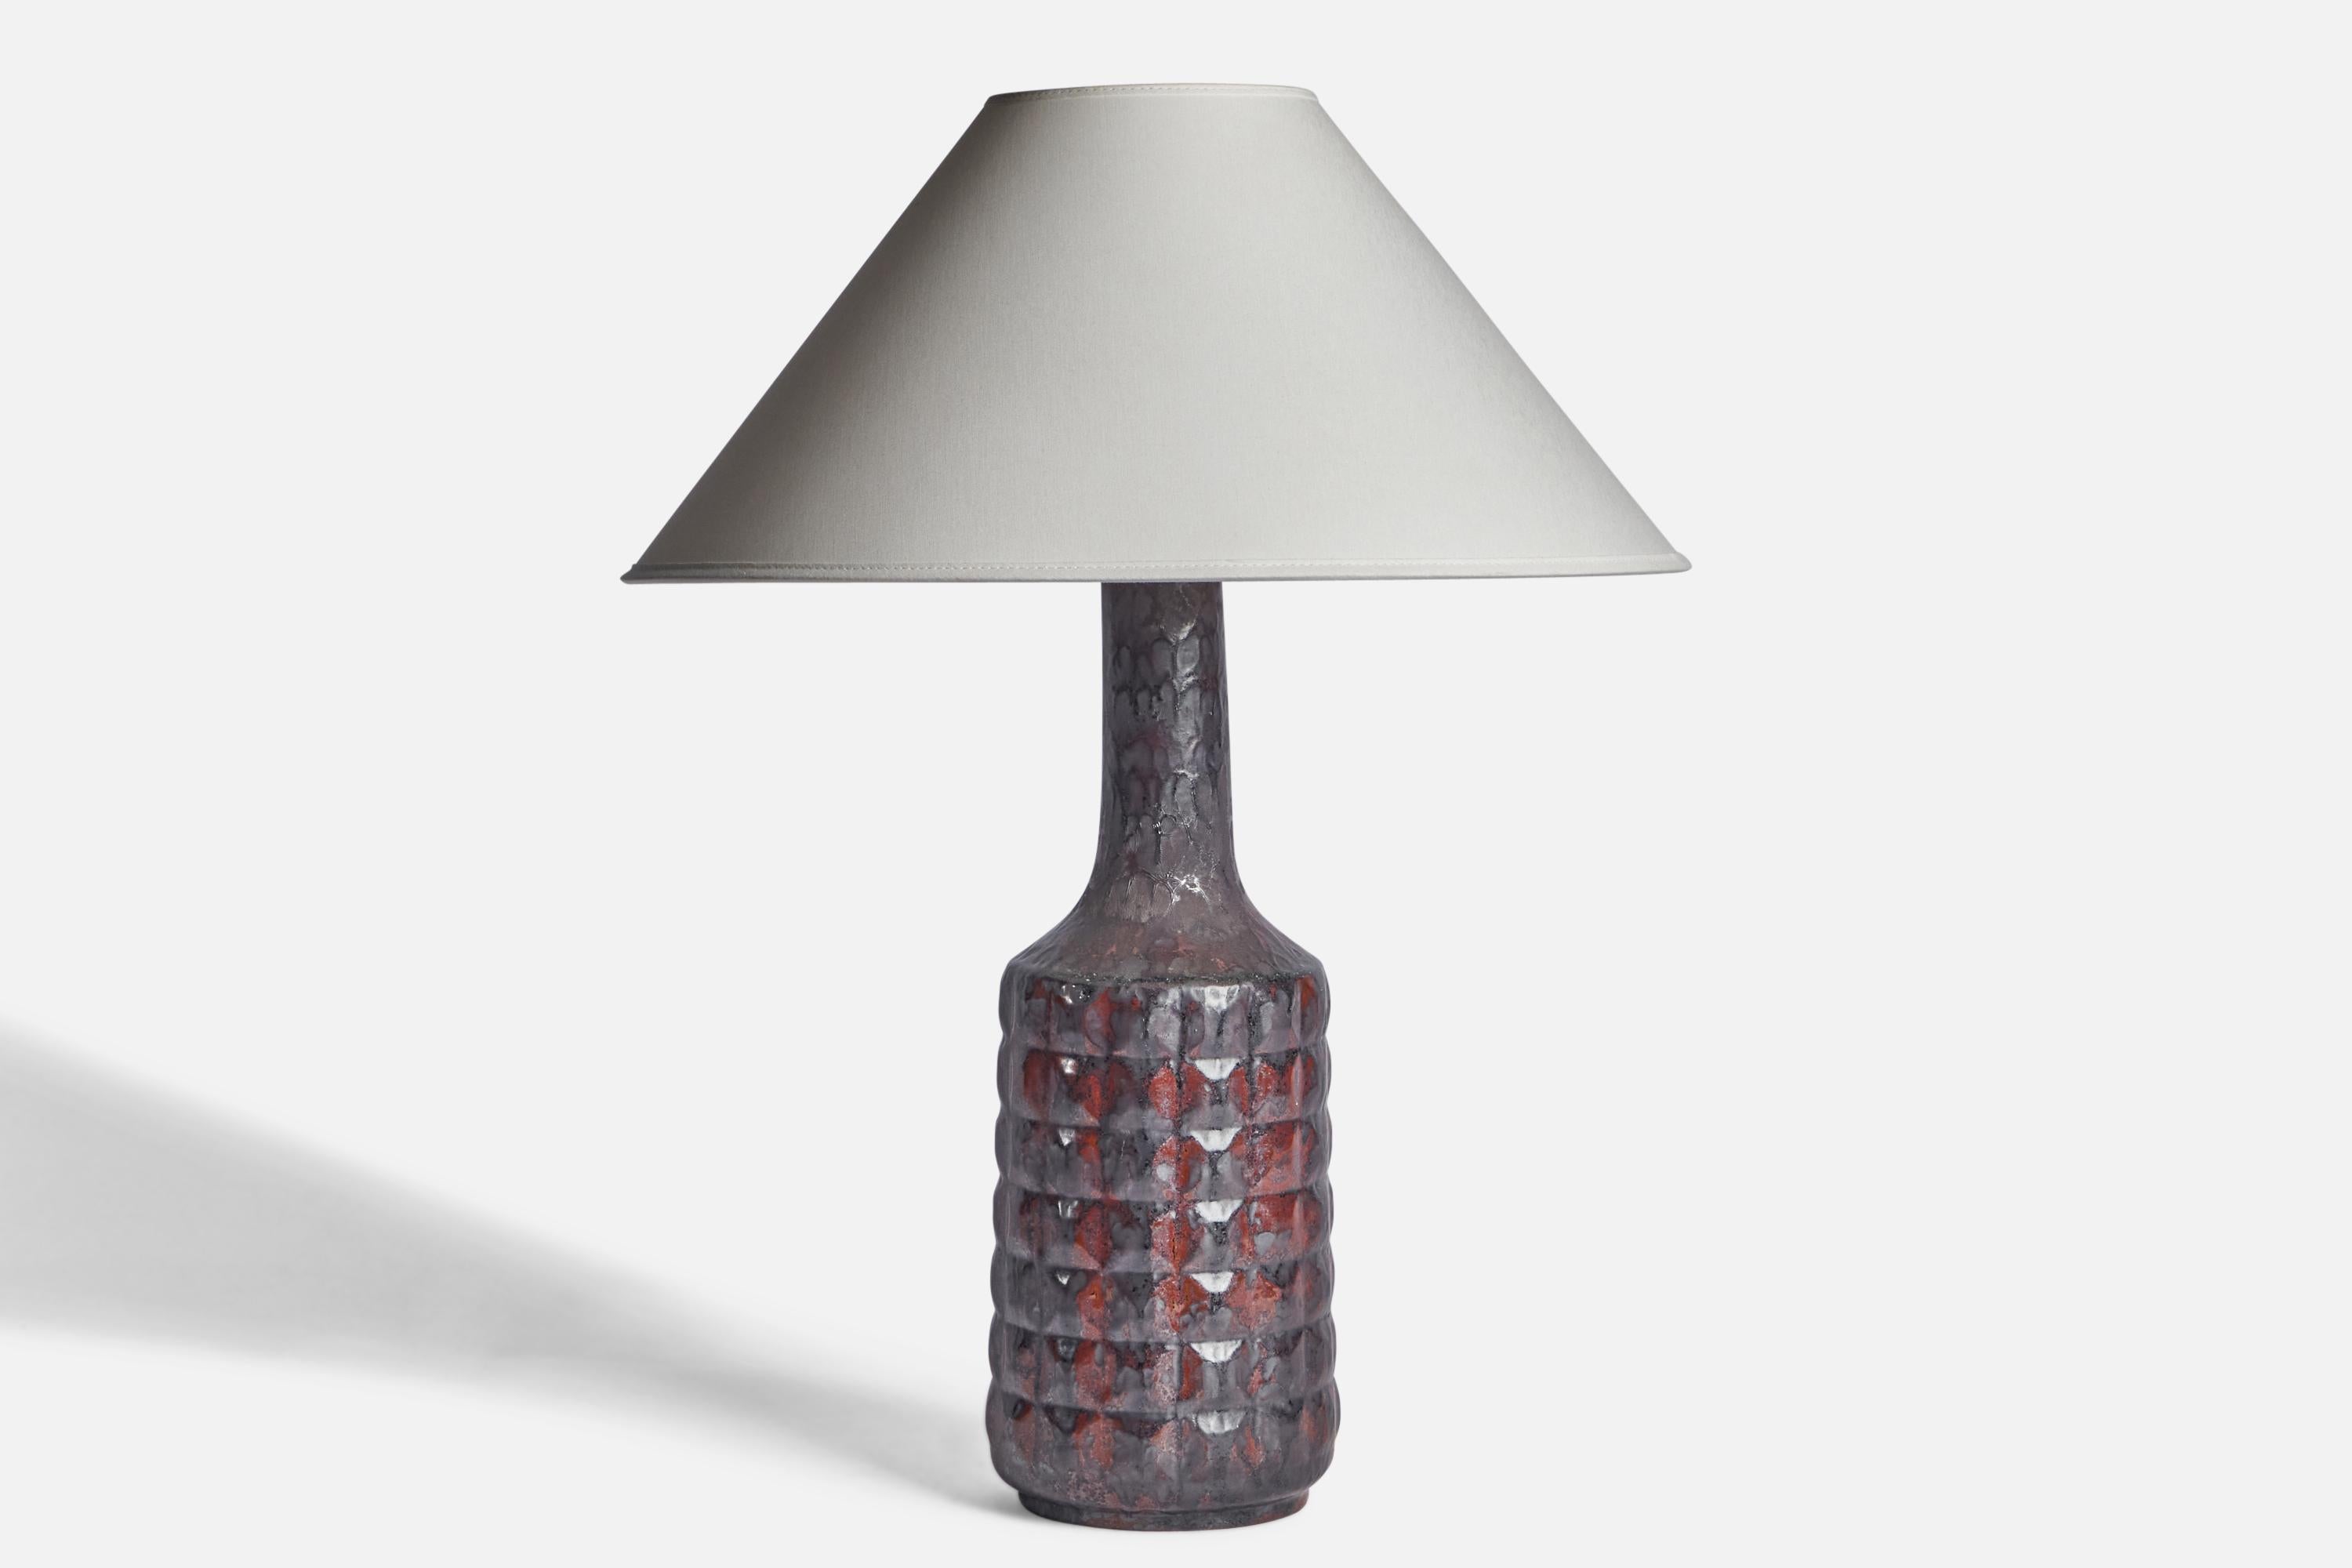 Tischlampe aus schwarzem und rot glasiertem Steingut, entworfen und hergestellt von Desiree, Dänemark, ca. 1960er Jahre.

Abmessungen der Lampe (Zoll): 17